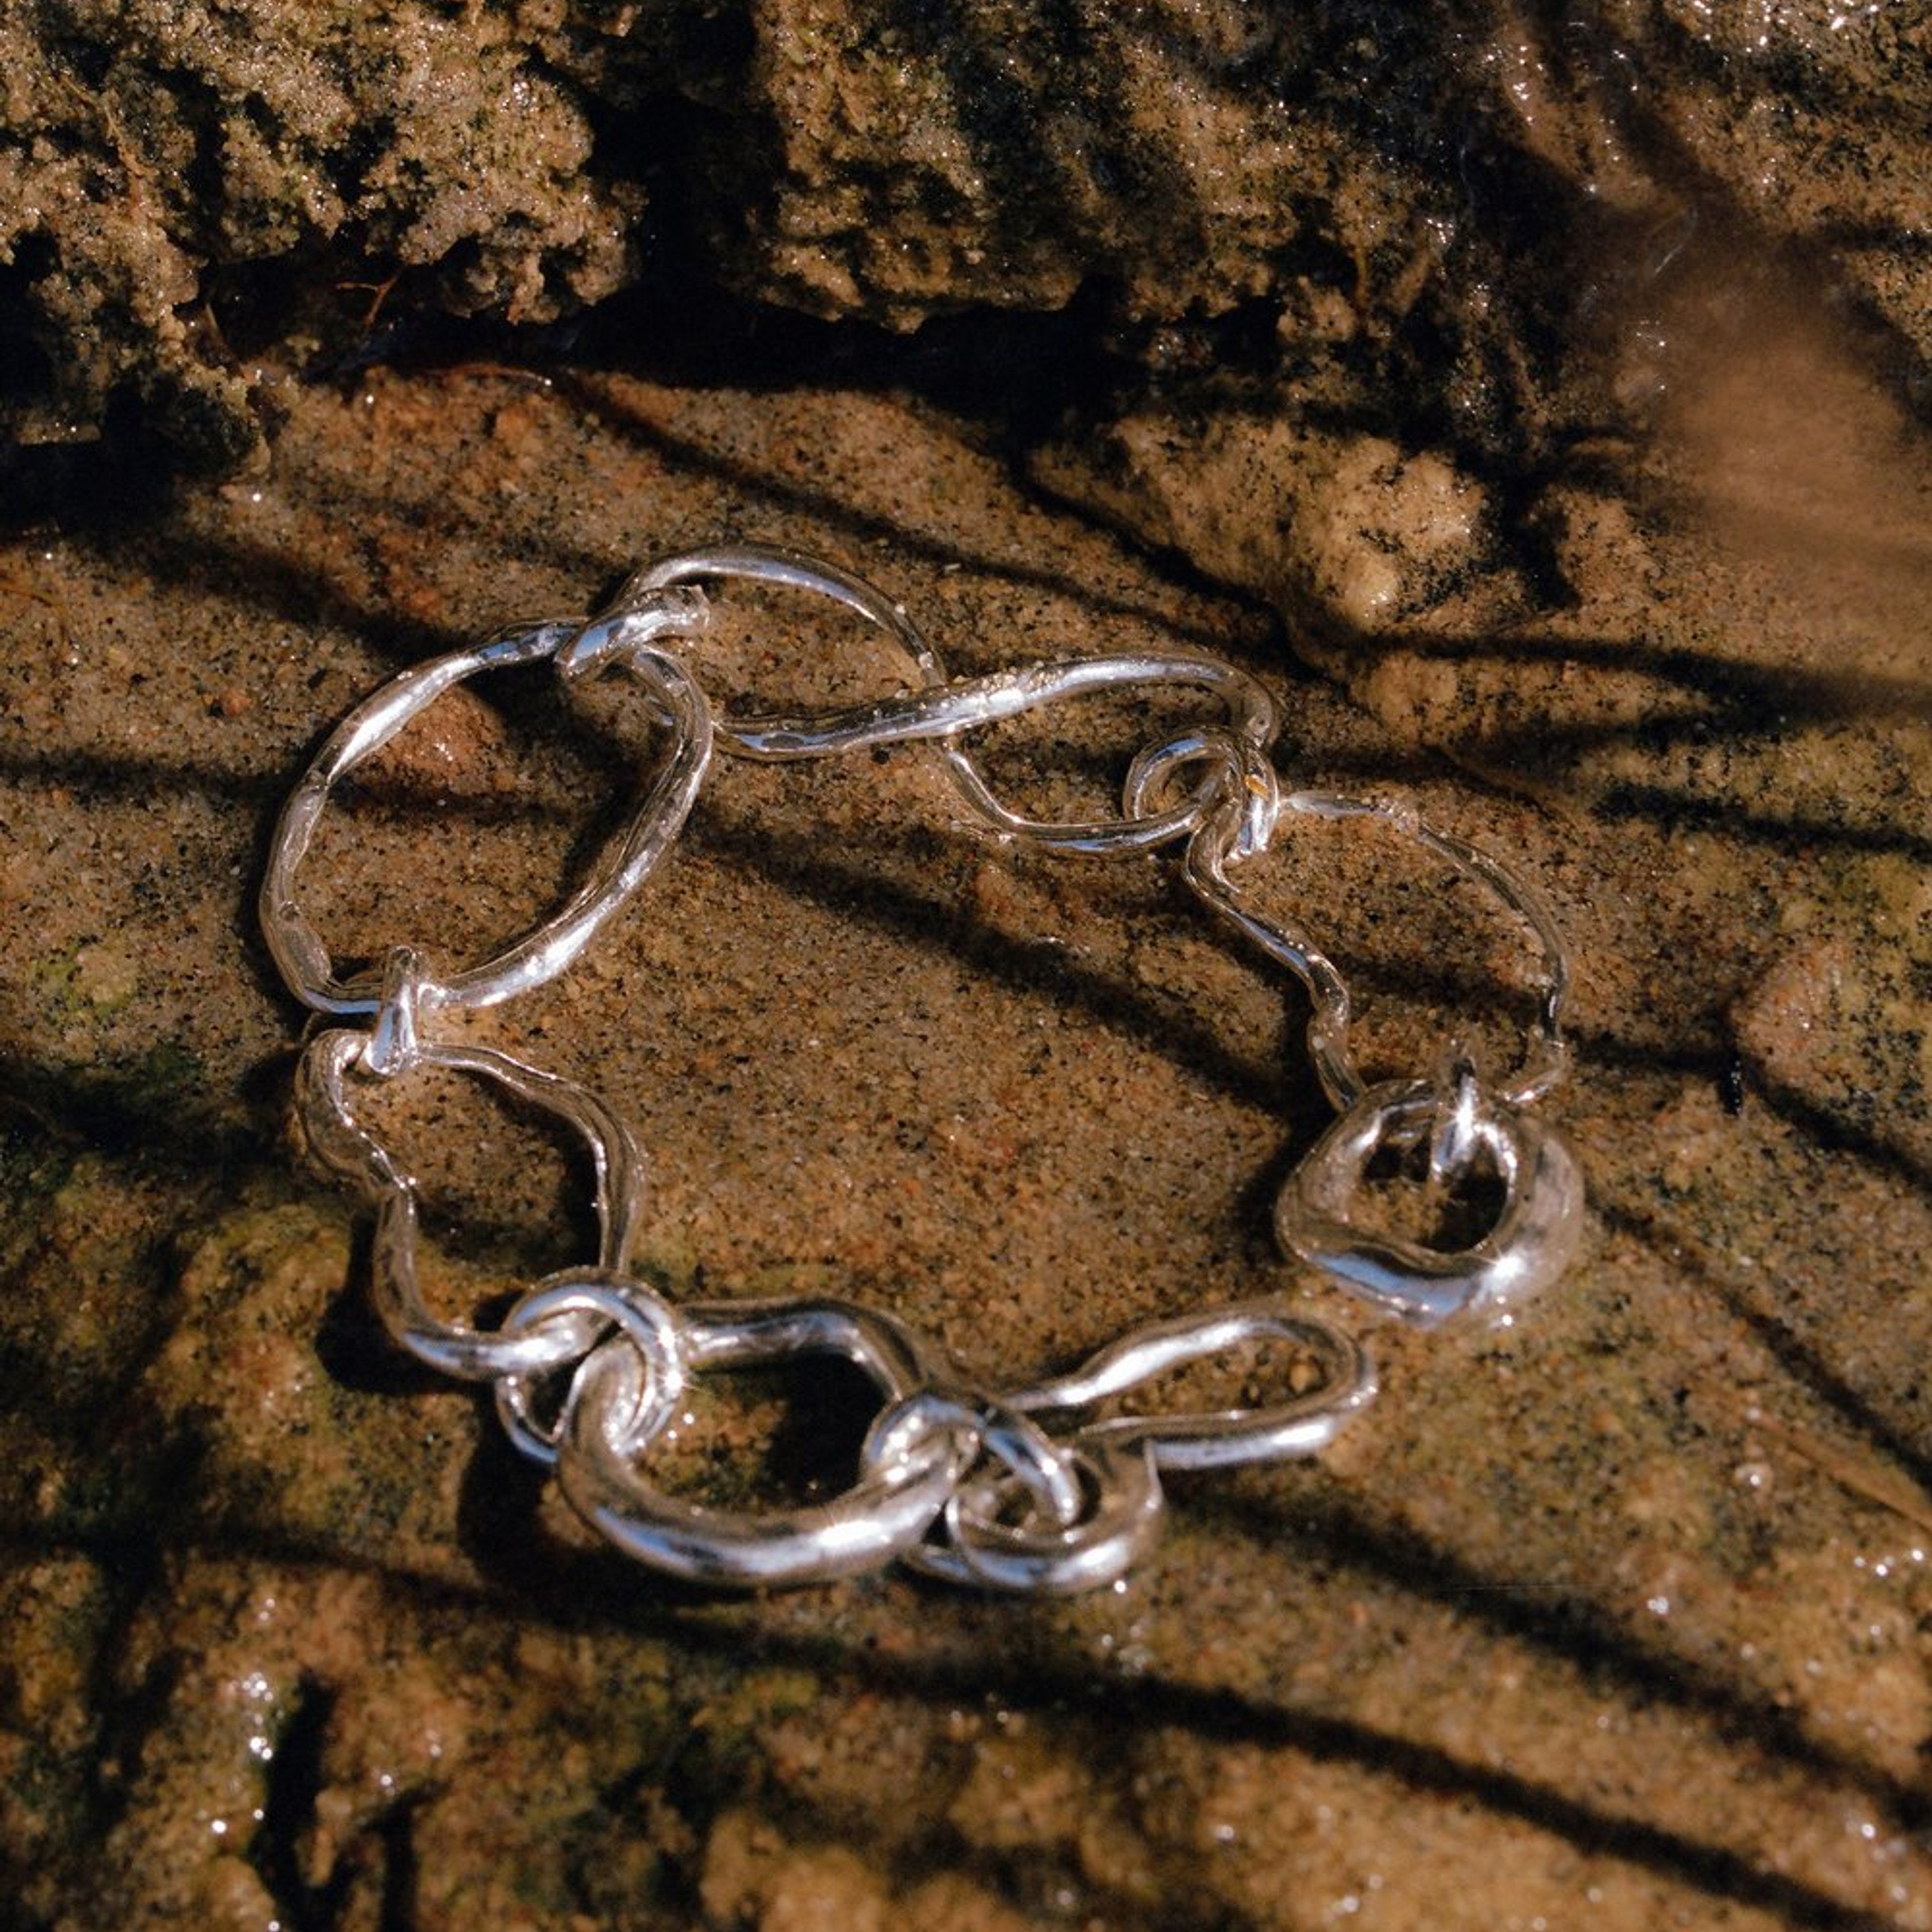 Rive Chain Bracelet in Sterling Silver